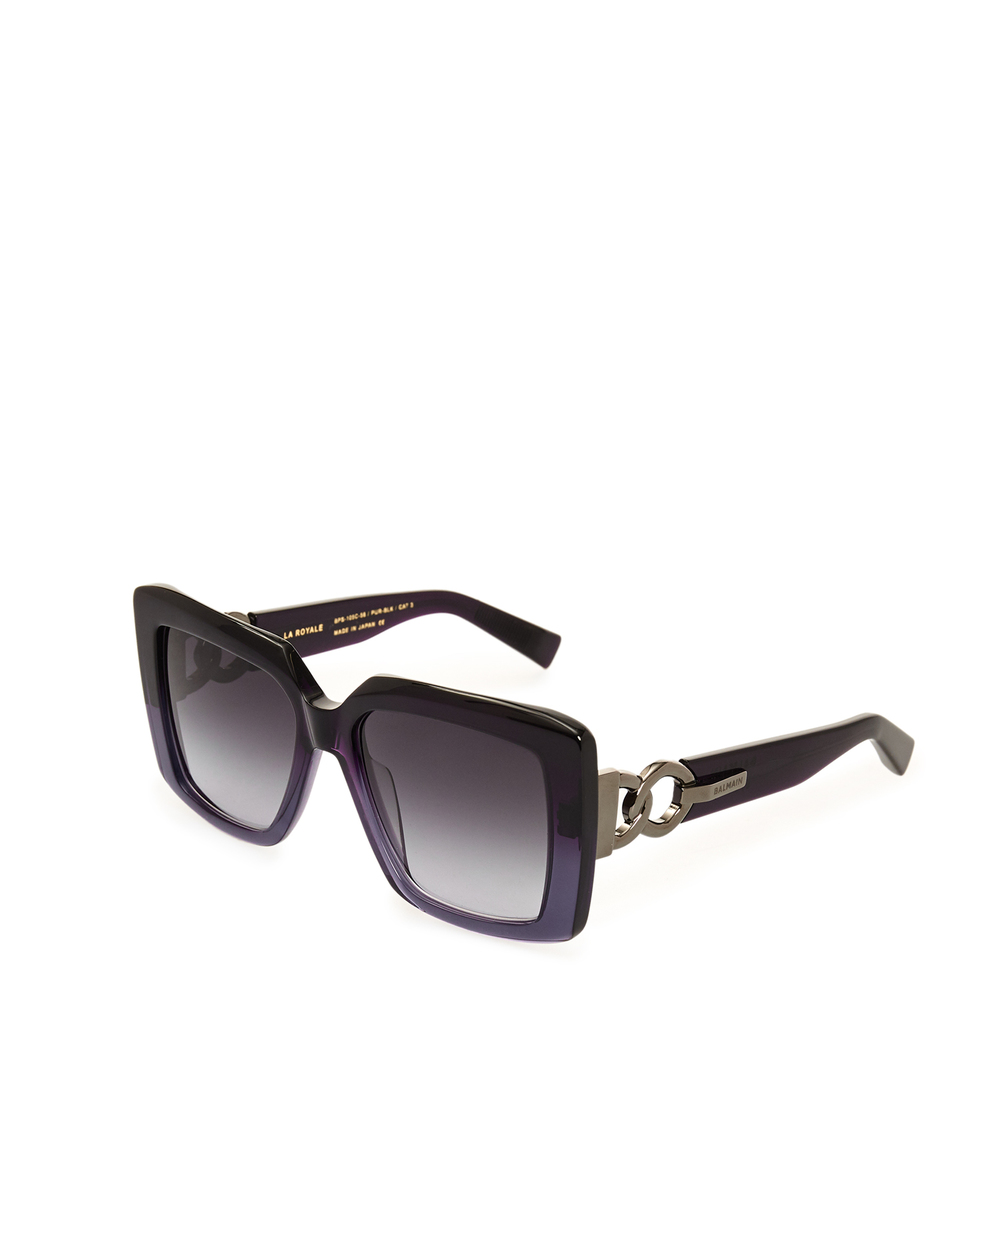 Солнцезащитные очки Balmain BPS-105C-56, фиолетовый цвет • Купить в интернет-магазине Kameron